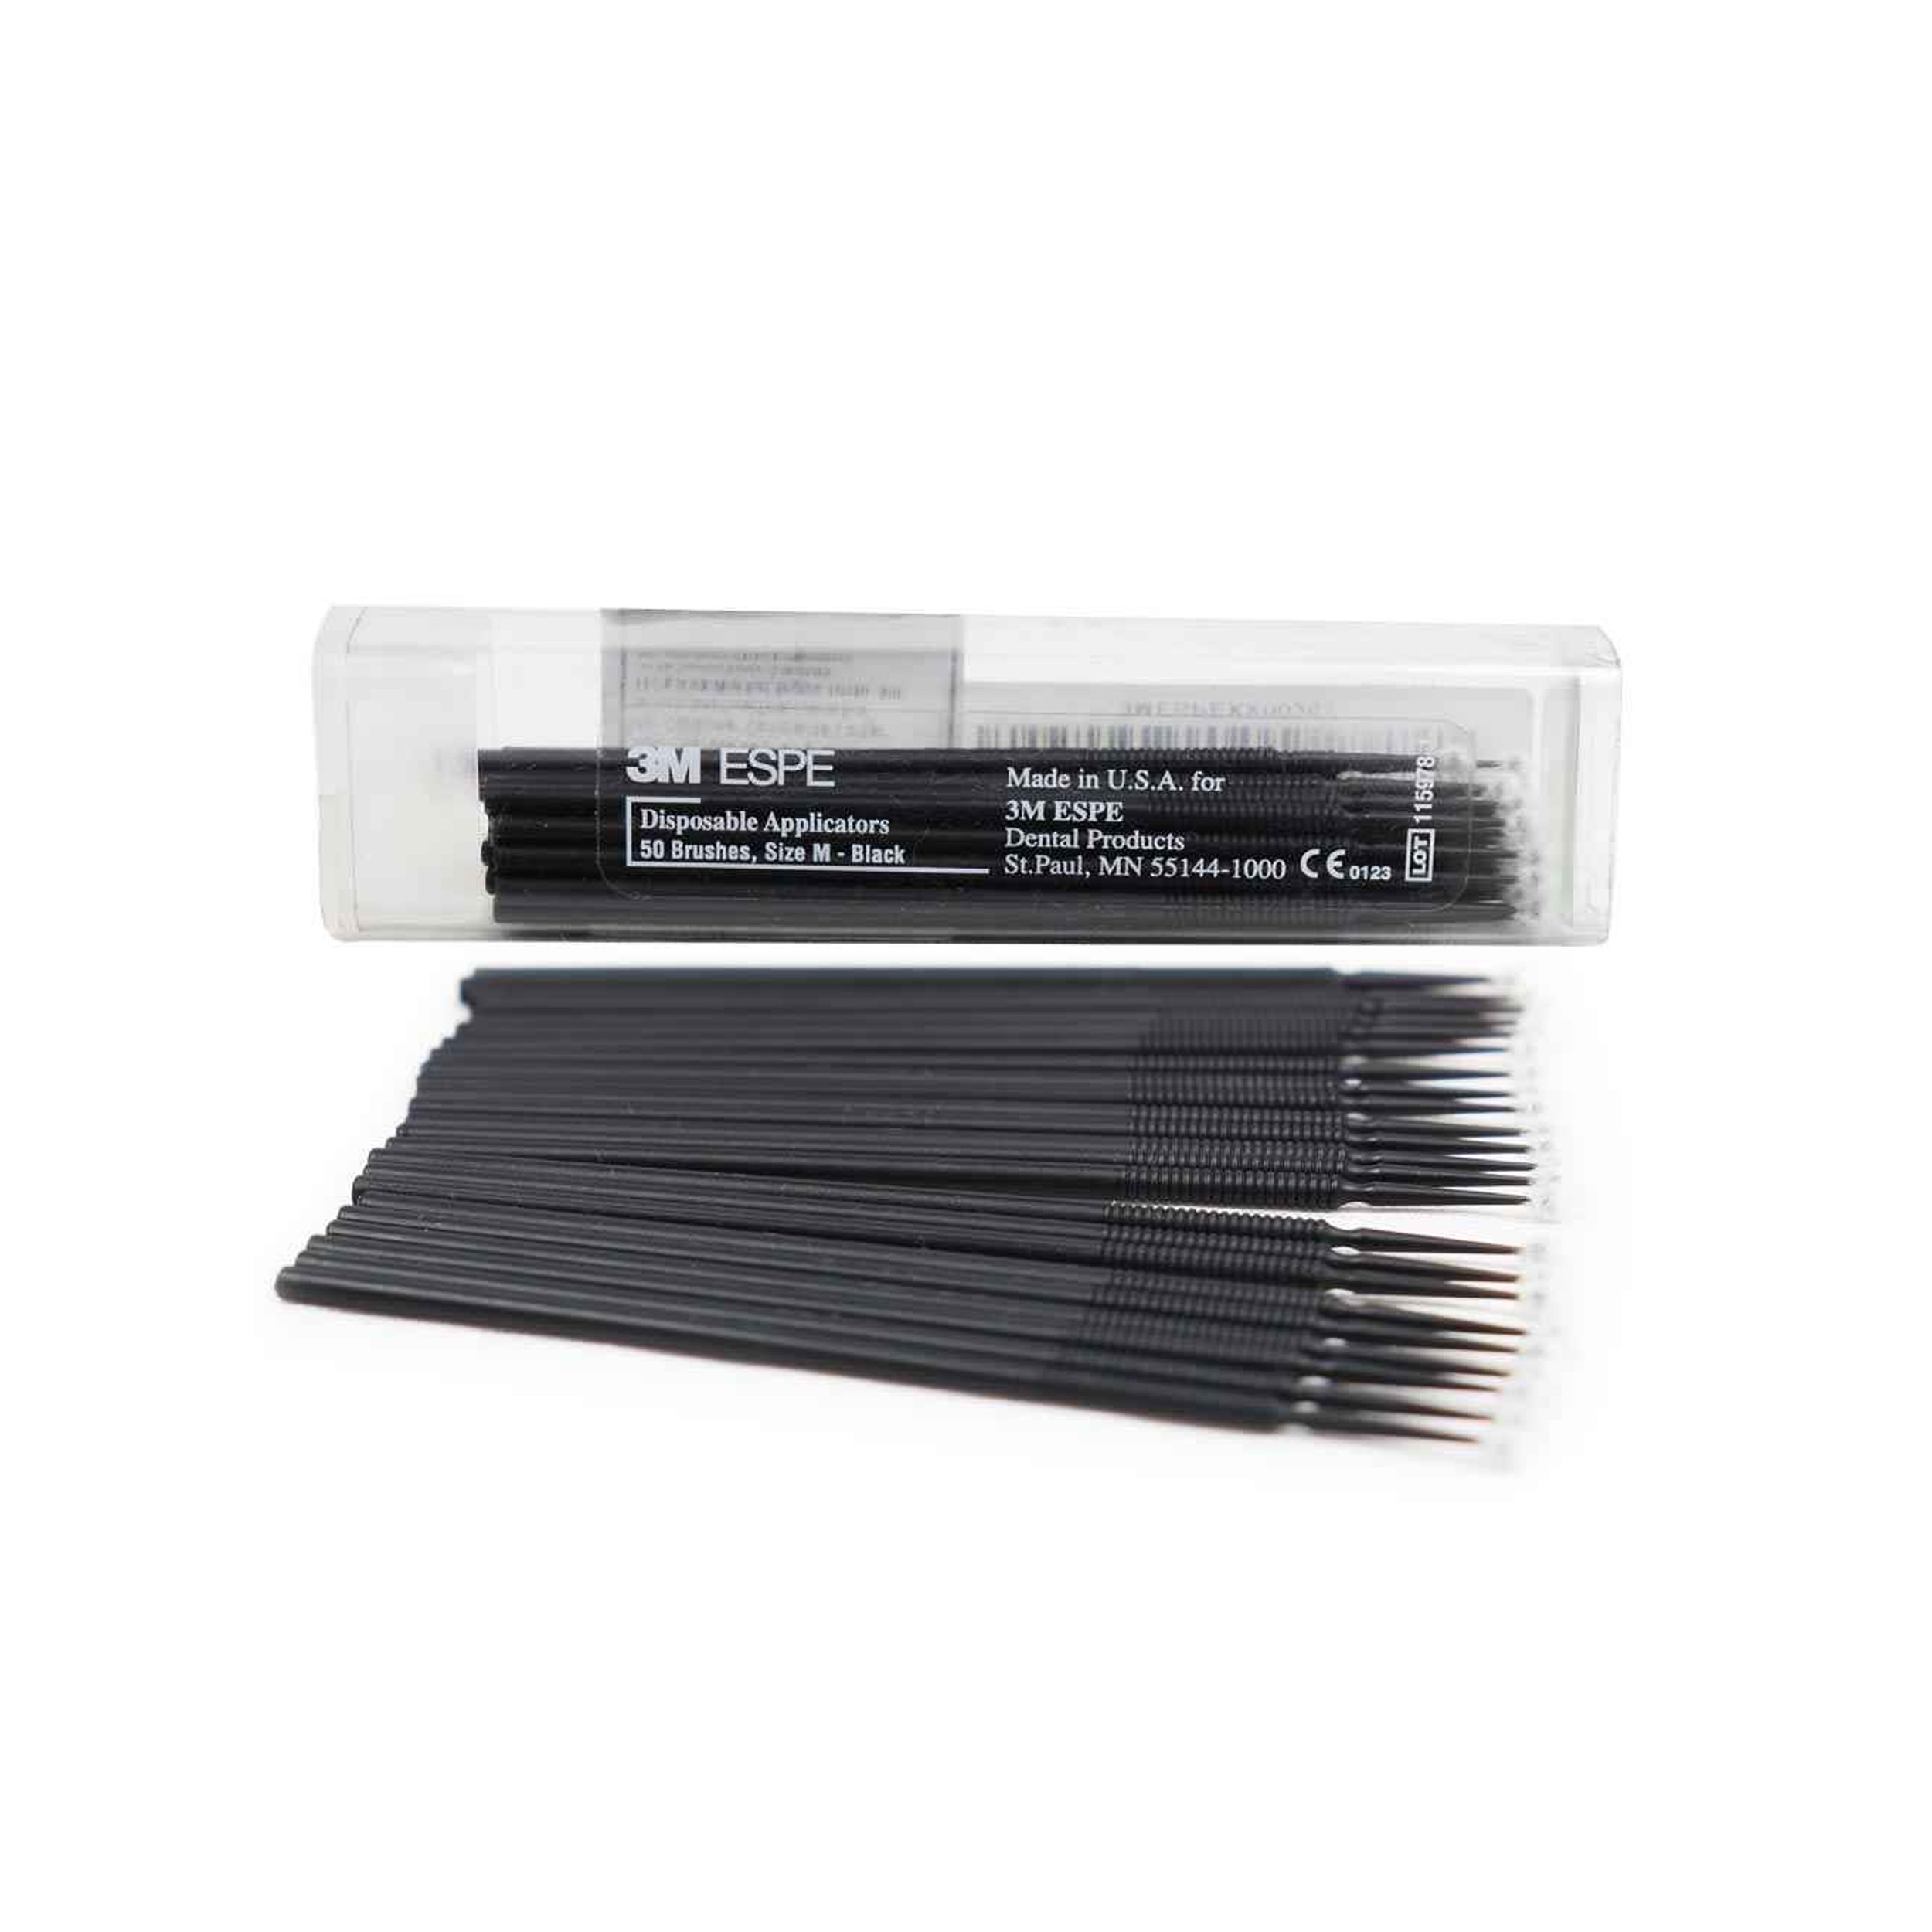 3M ESPE Disposable Applicators Size-m- Black 50 Pcs (Pack Of 5)